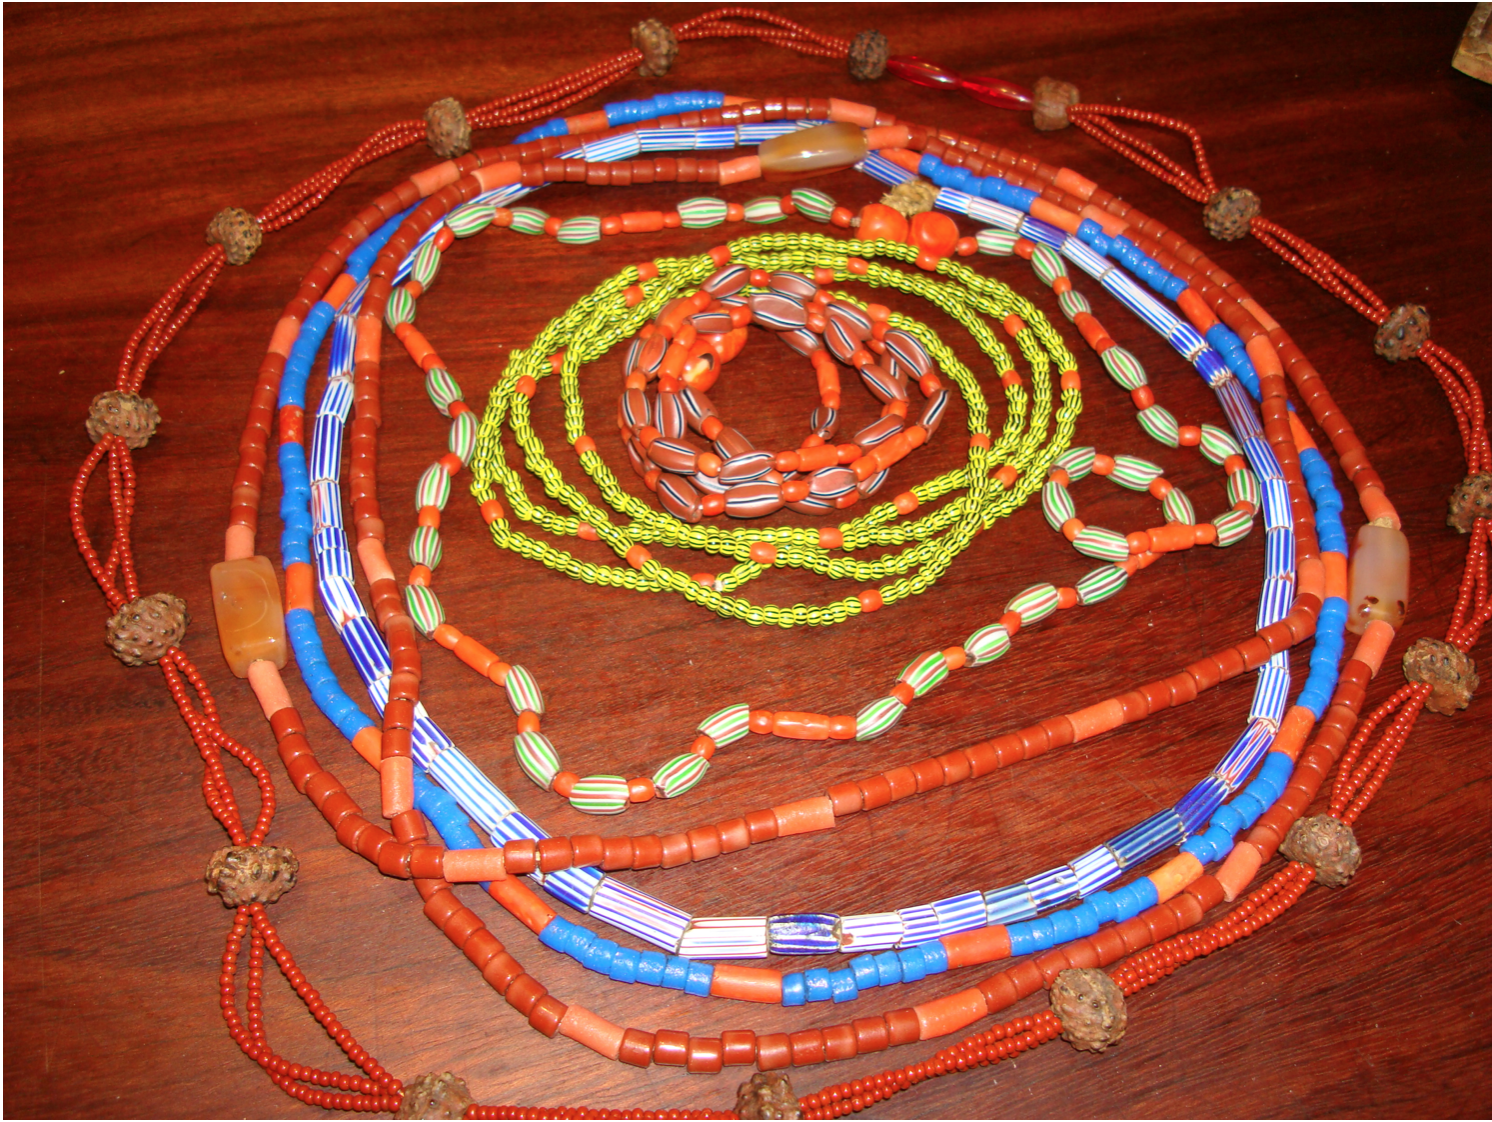 Fio de conta beads on string